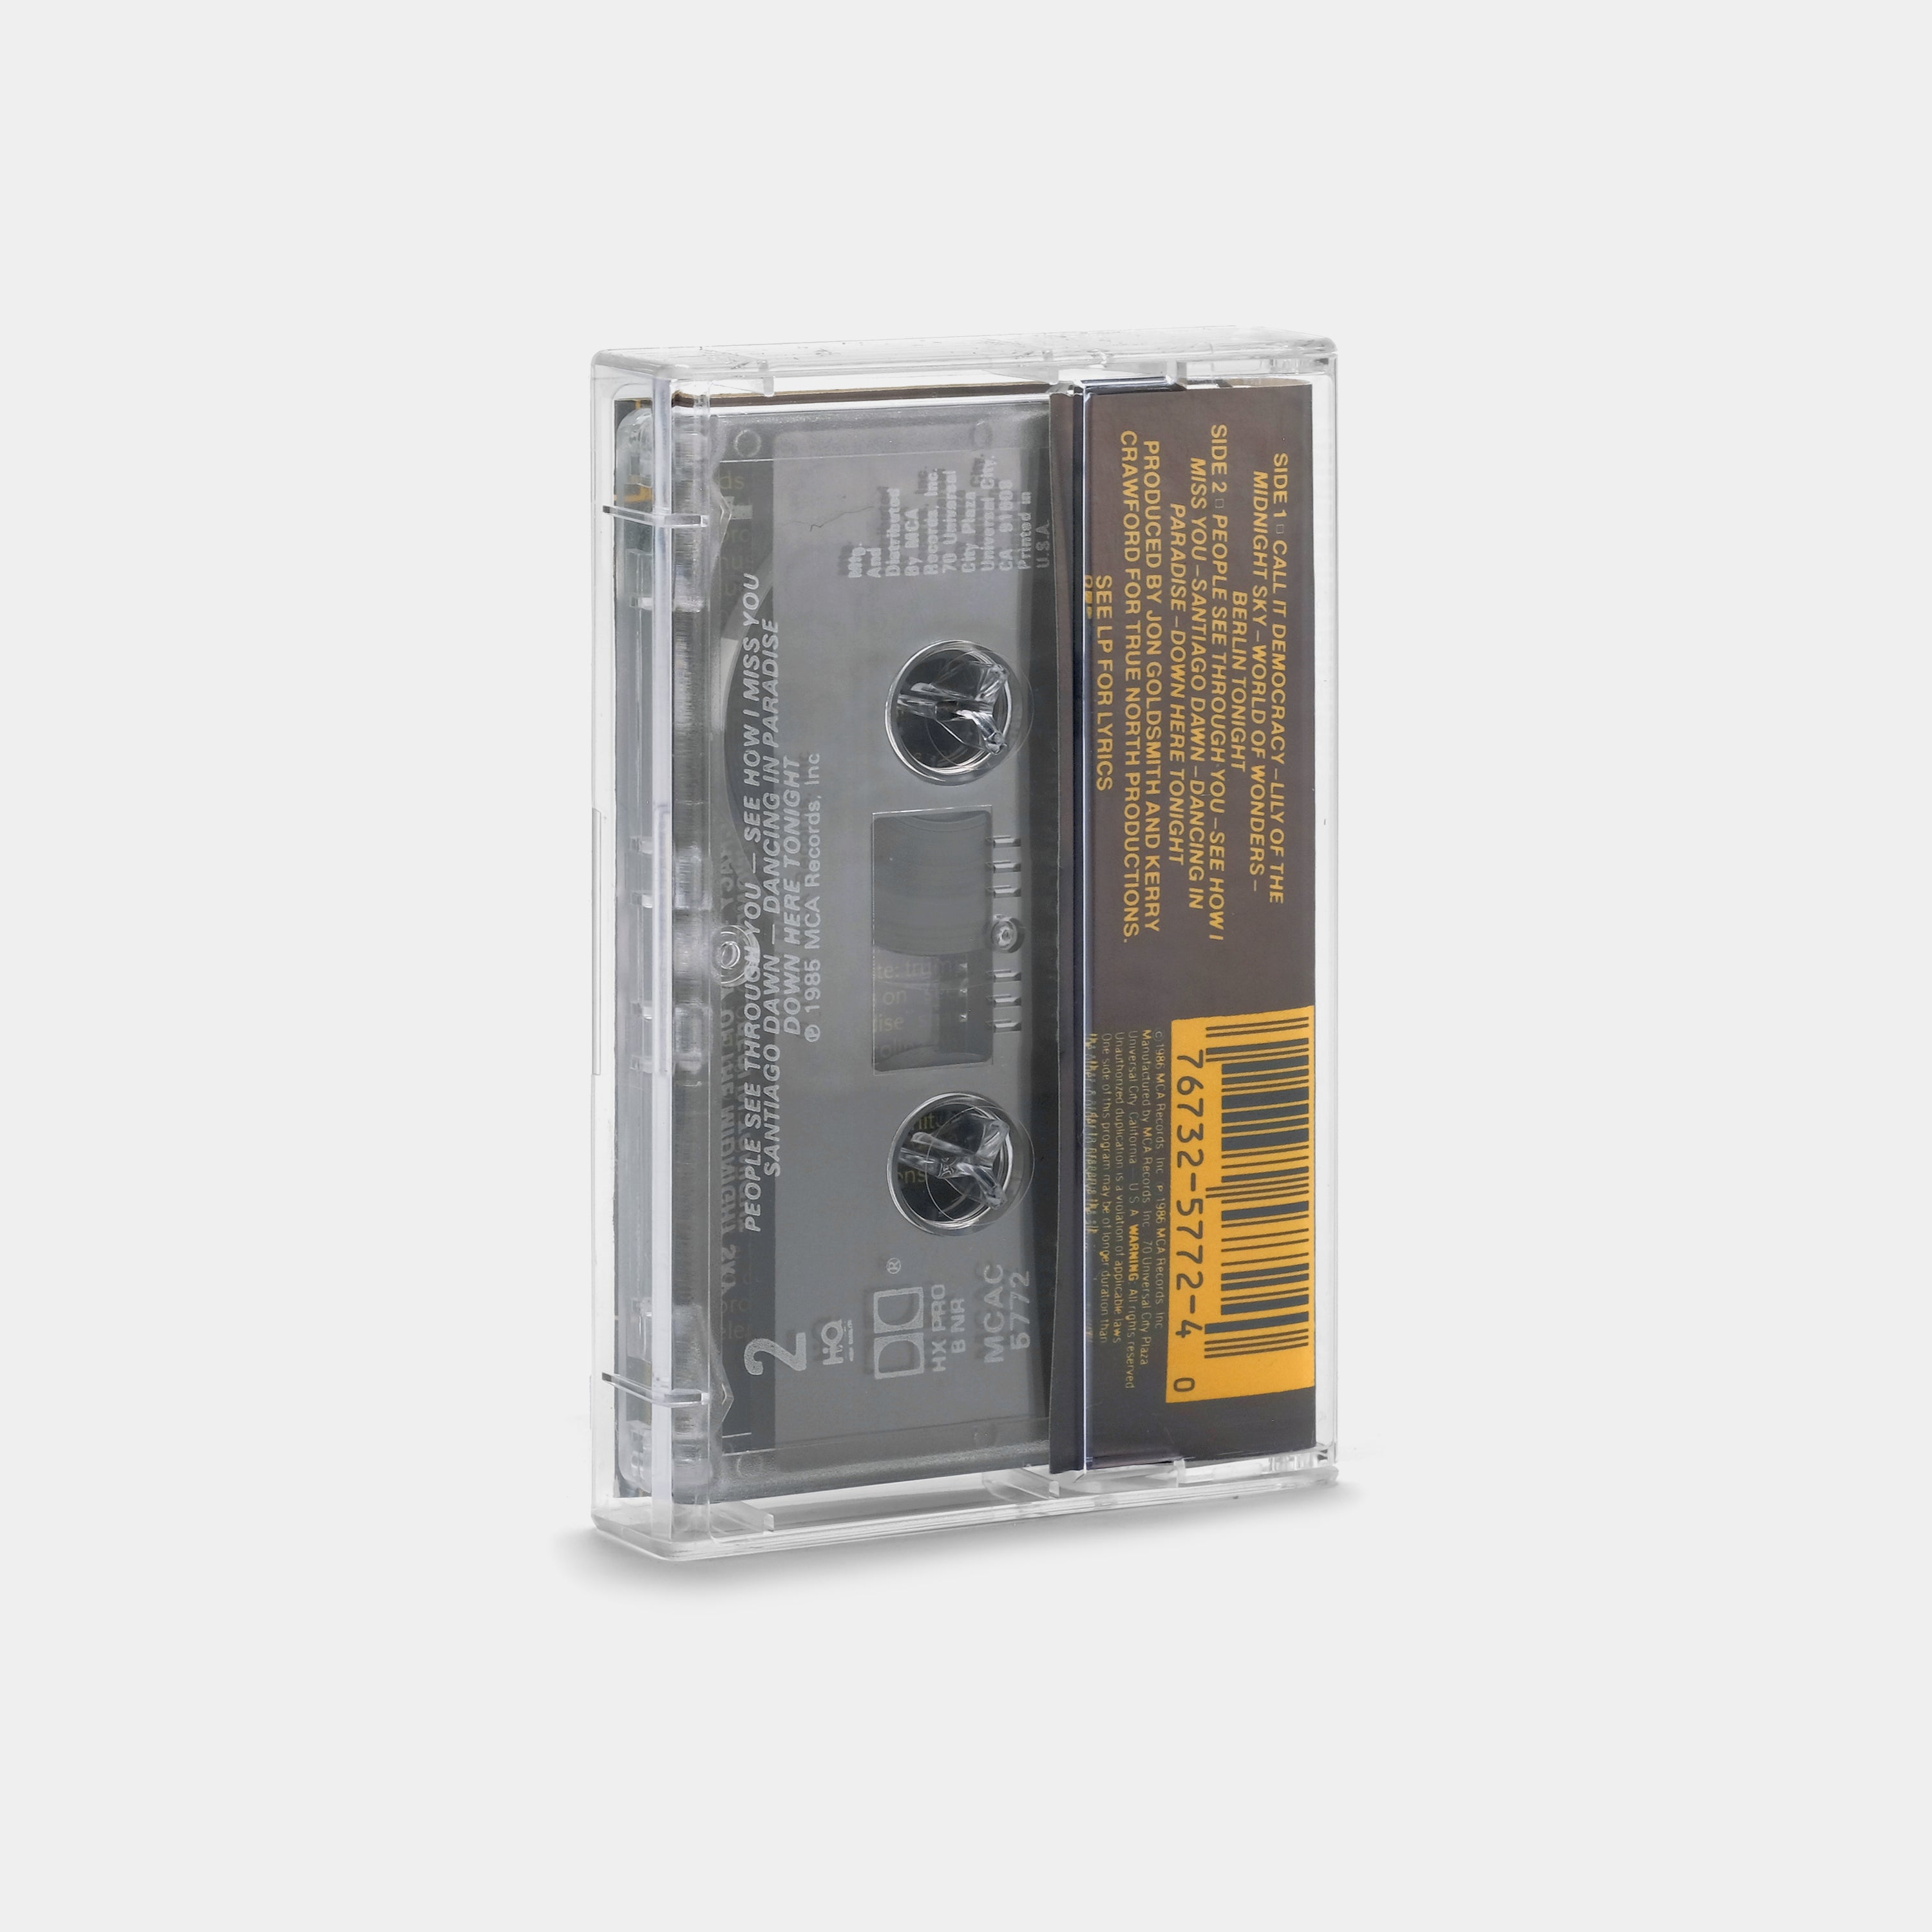 Bruce Cockburn - World of Wonders Cassette Tape